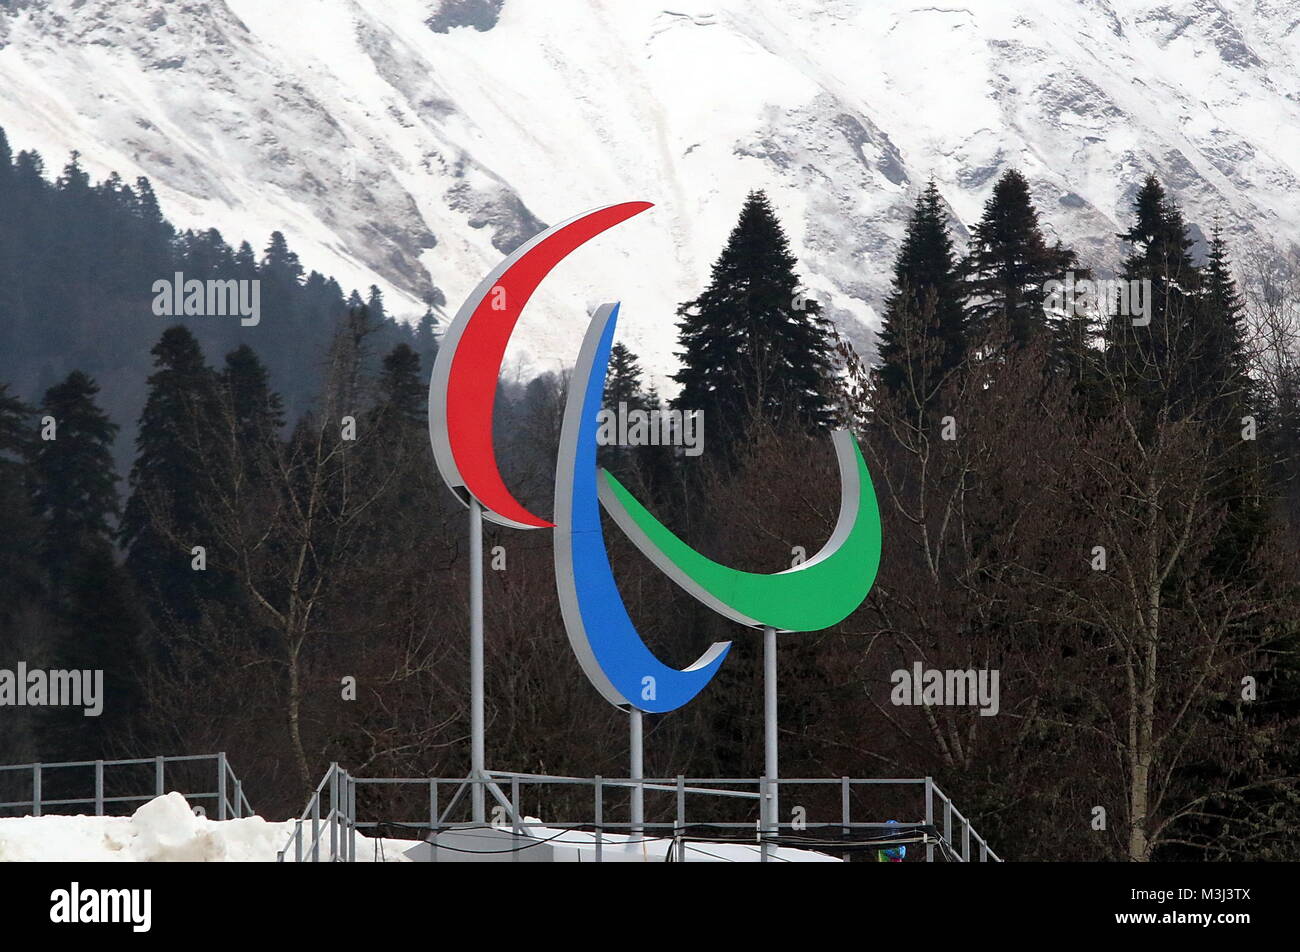 Paralympisches Zeichen bei den paralympiques Sotschi 2014 / 2014 Jeux paralympiques d'hiver de Sotchi Banque D'Images